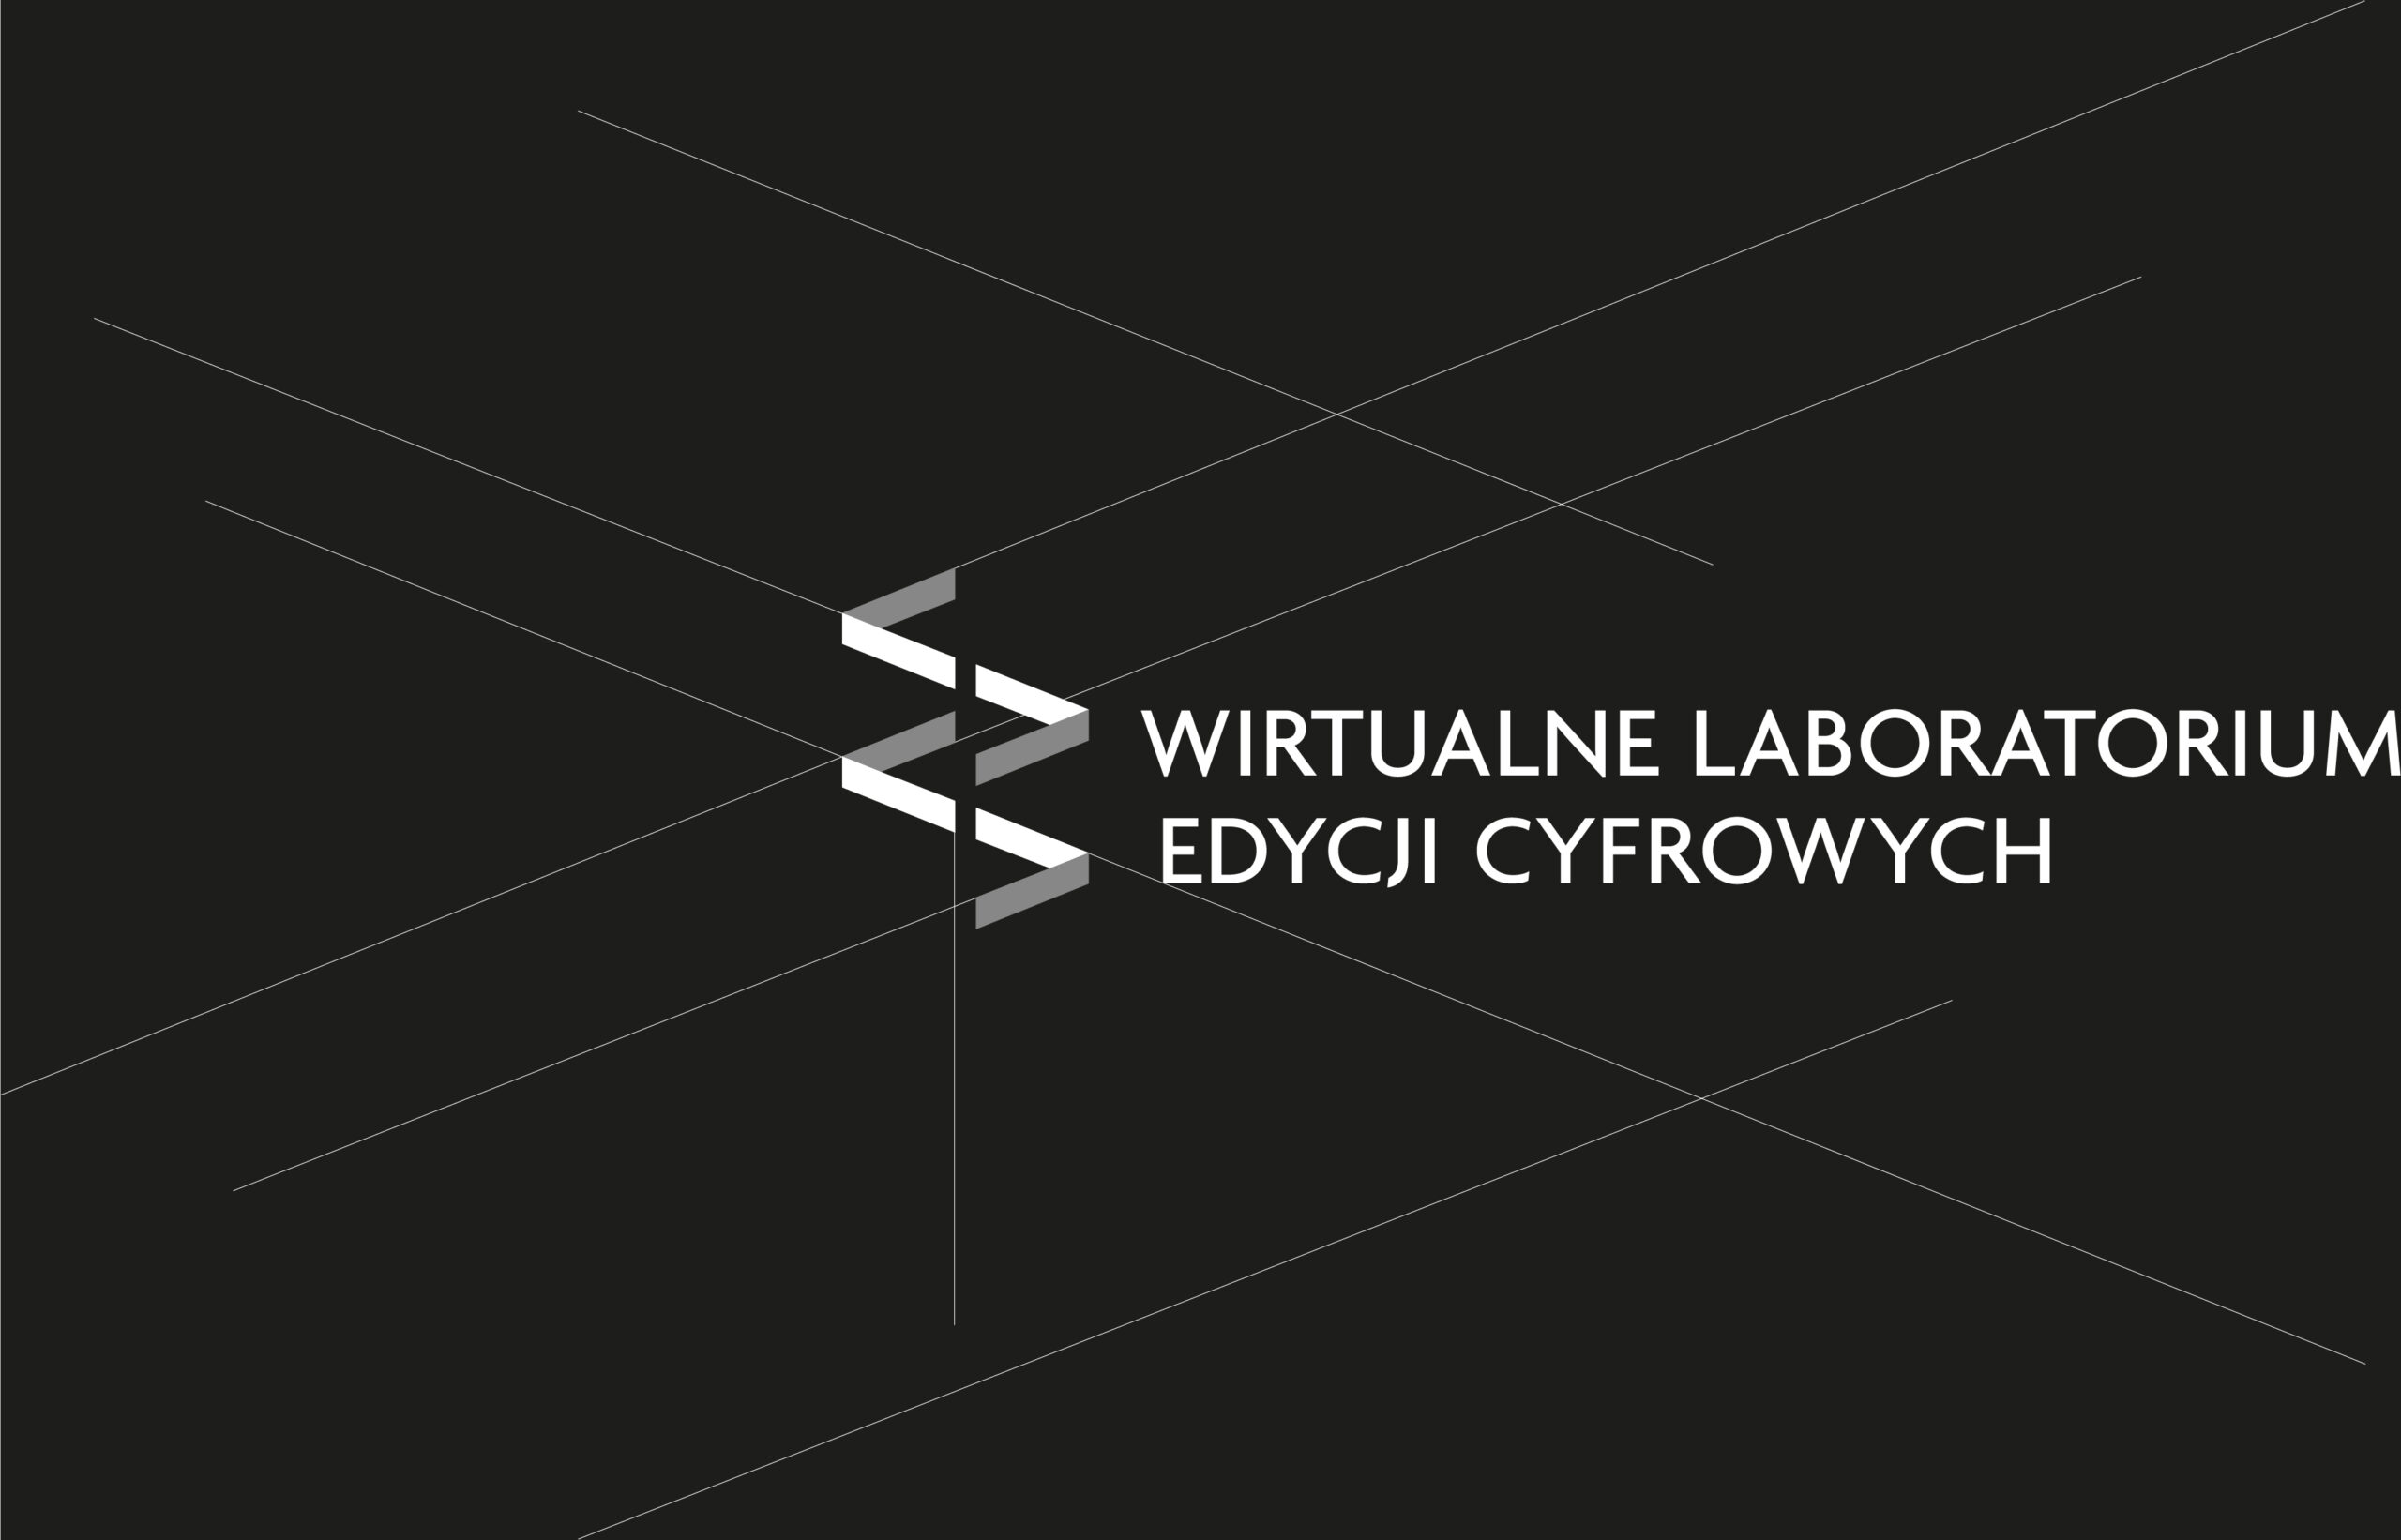 Wirtualne Laboratorium Edycji Cyfrowych